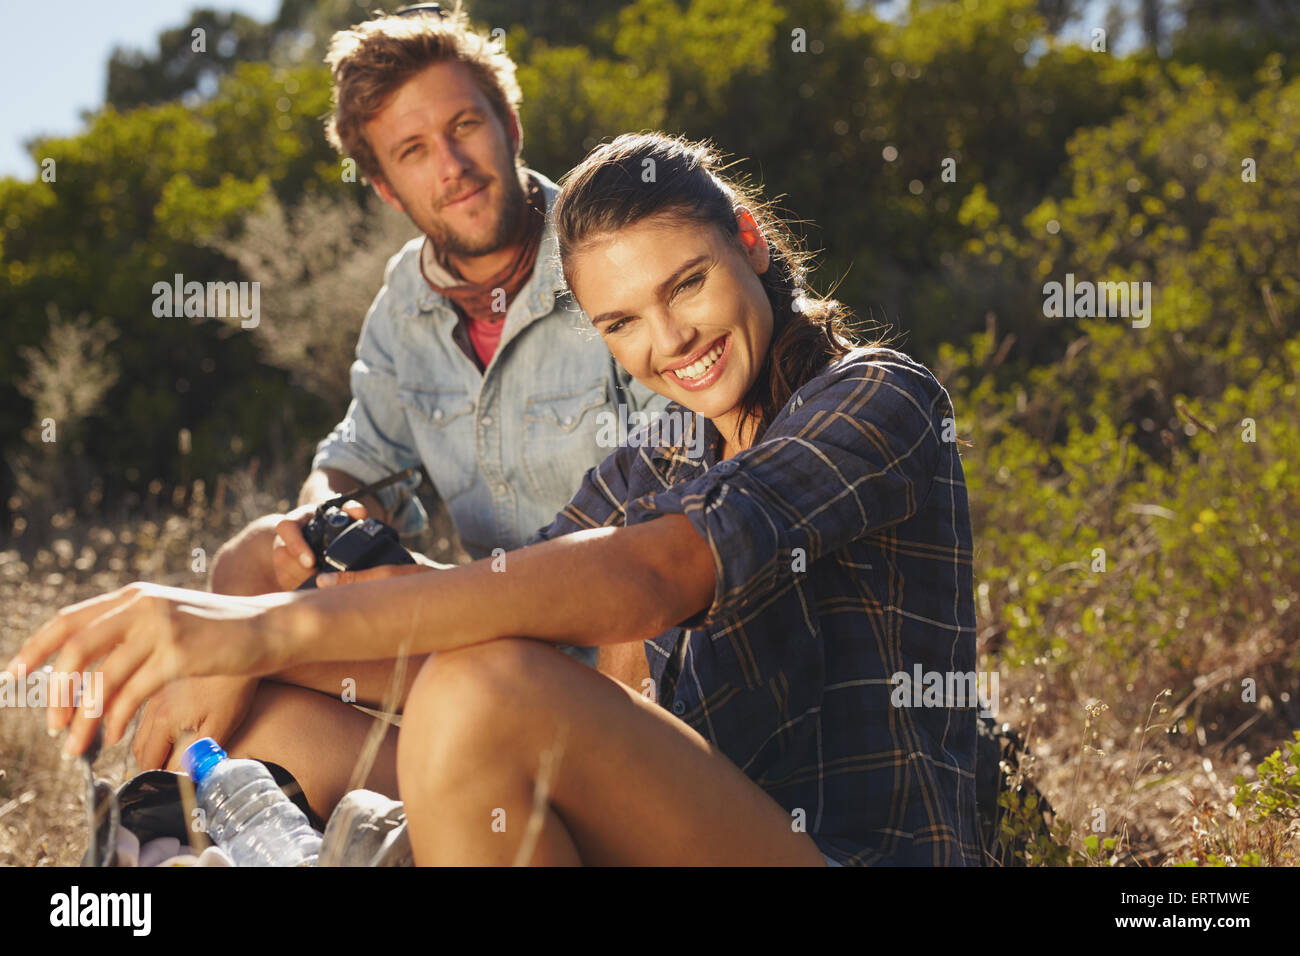 Portrait de jeune femme heureuse avec son petit ami en faisant une pause sur une randonnée. Couple hiking en vacances, Woman ca Banque D'Images